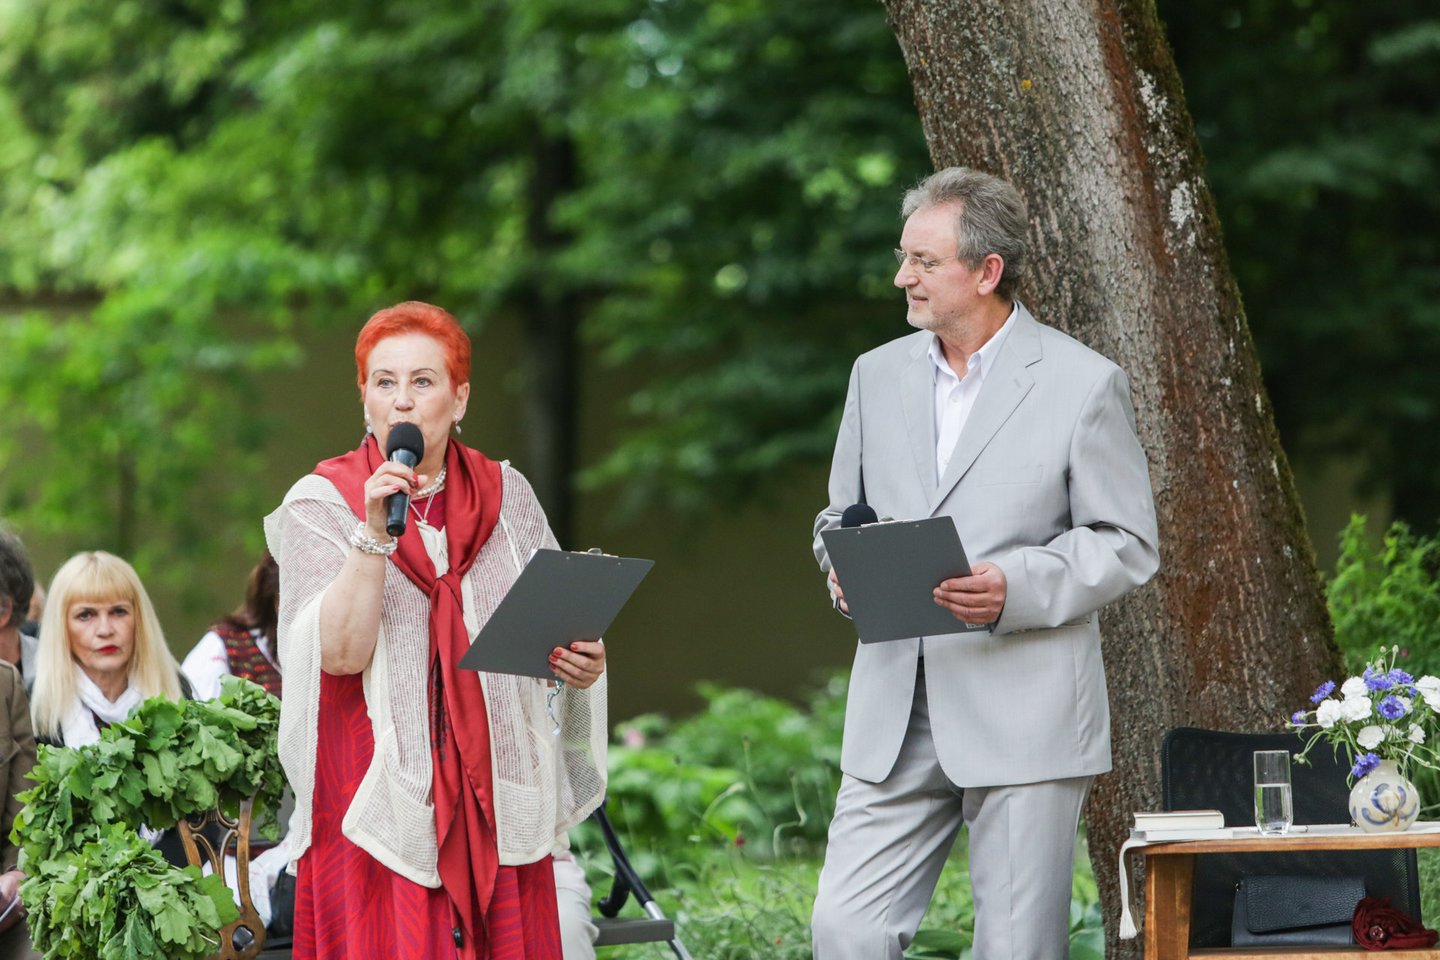  Kauno Maironio muziejaus sodelyje įvyko šių metų „Poezijos pavasario“ laureato A.Grybausko vainikavimo ceremonija.<br>G.Bitvinsko nuotr.